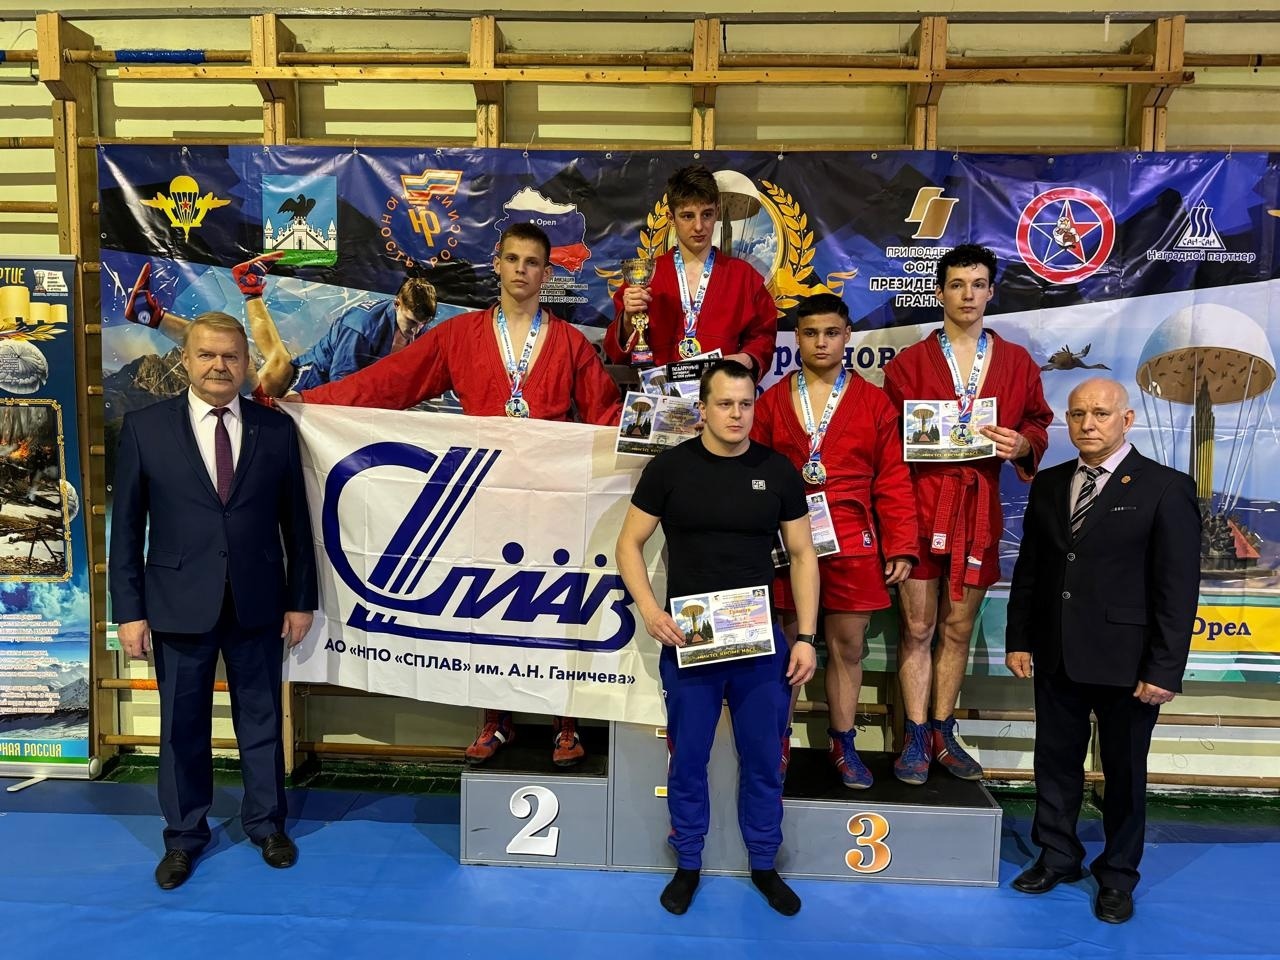 Туляк занял второе место на Всероссийских соревнованиях по самбо в Орле.